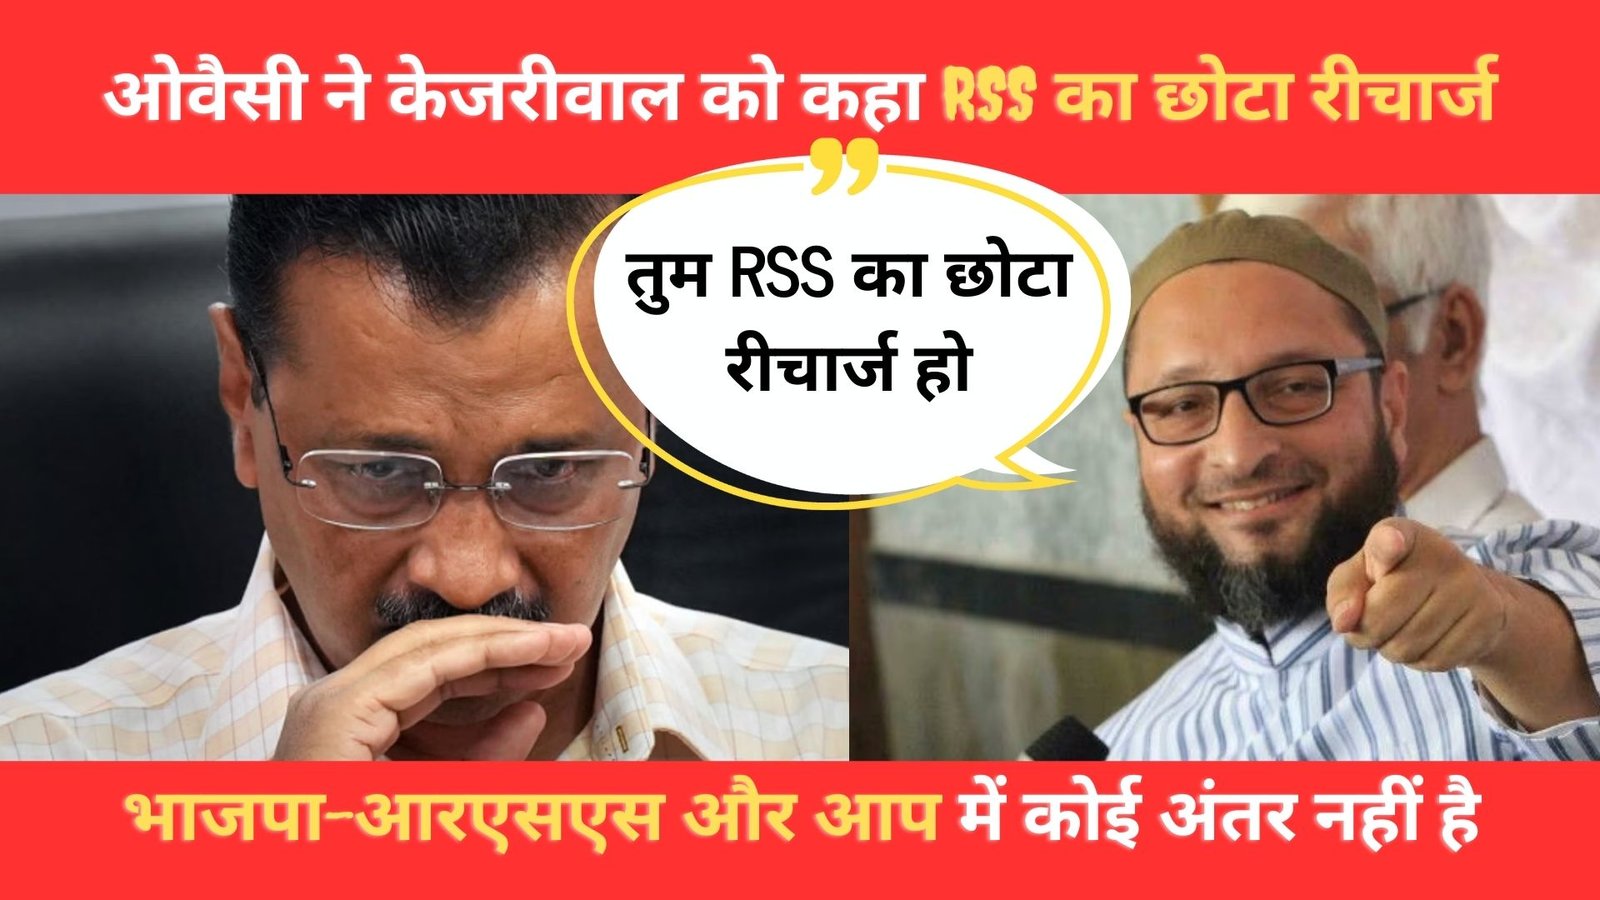 ओवैसी ने केजरीवाल को क्यों कहा RSS का छोटा रीचार्ज भाजपा-आरएसएस और आप में कोई अंतर नहीं है